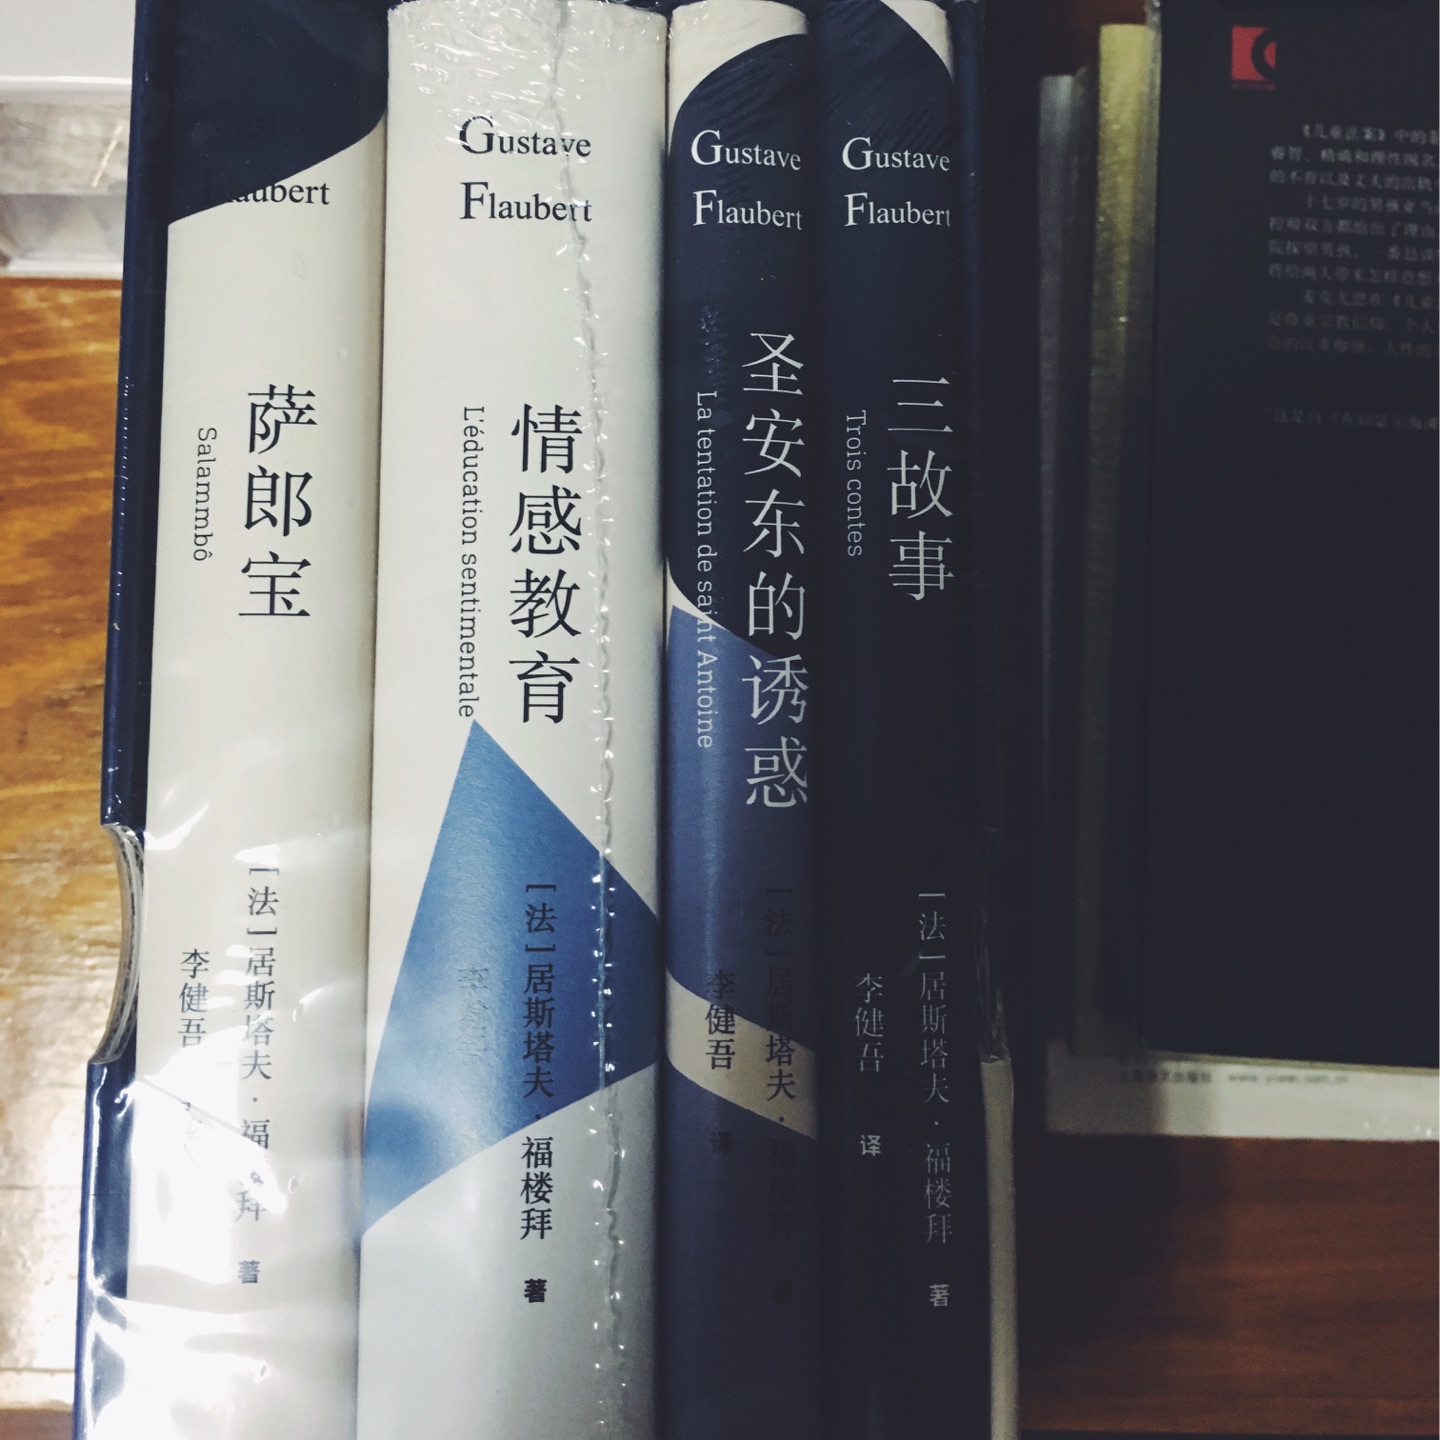 很喜欢上海译文出版社的书，翻译好，书本质量也好。活动买了很多，满意！